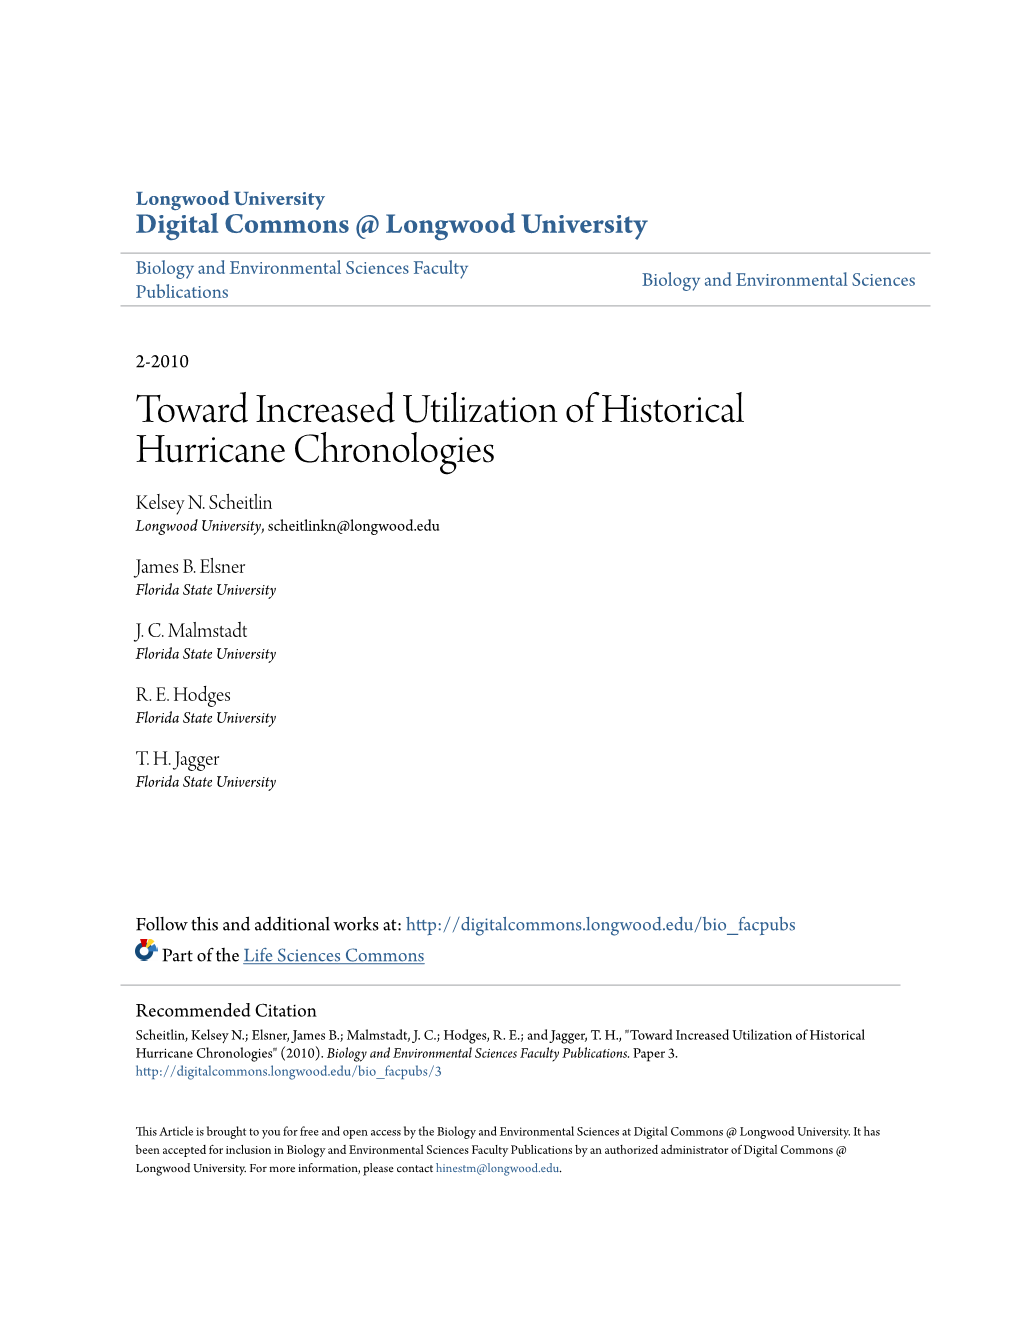 Toward Increased Utilization of Historical Hurricane Chronologies Kelsey N